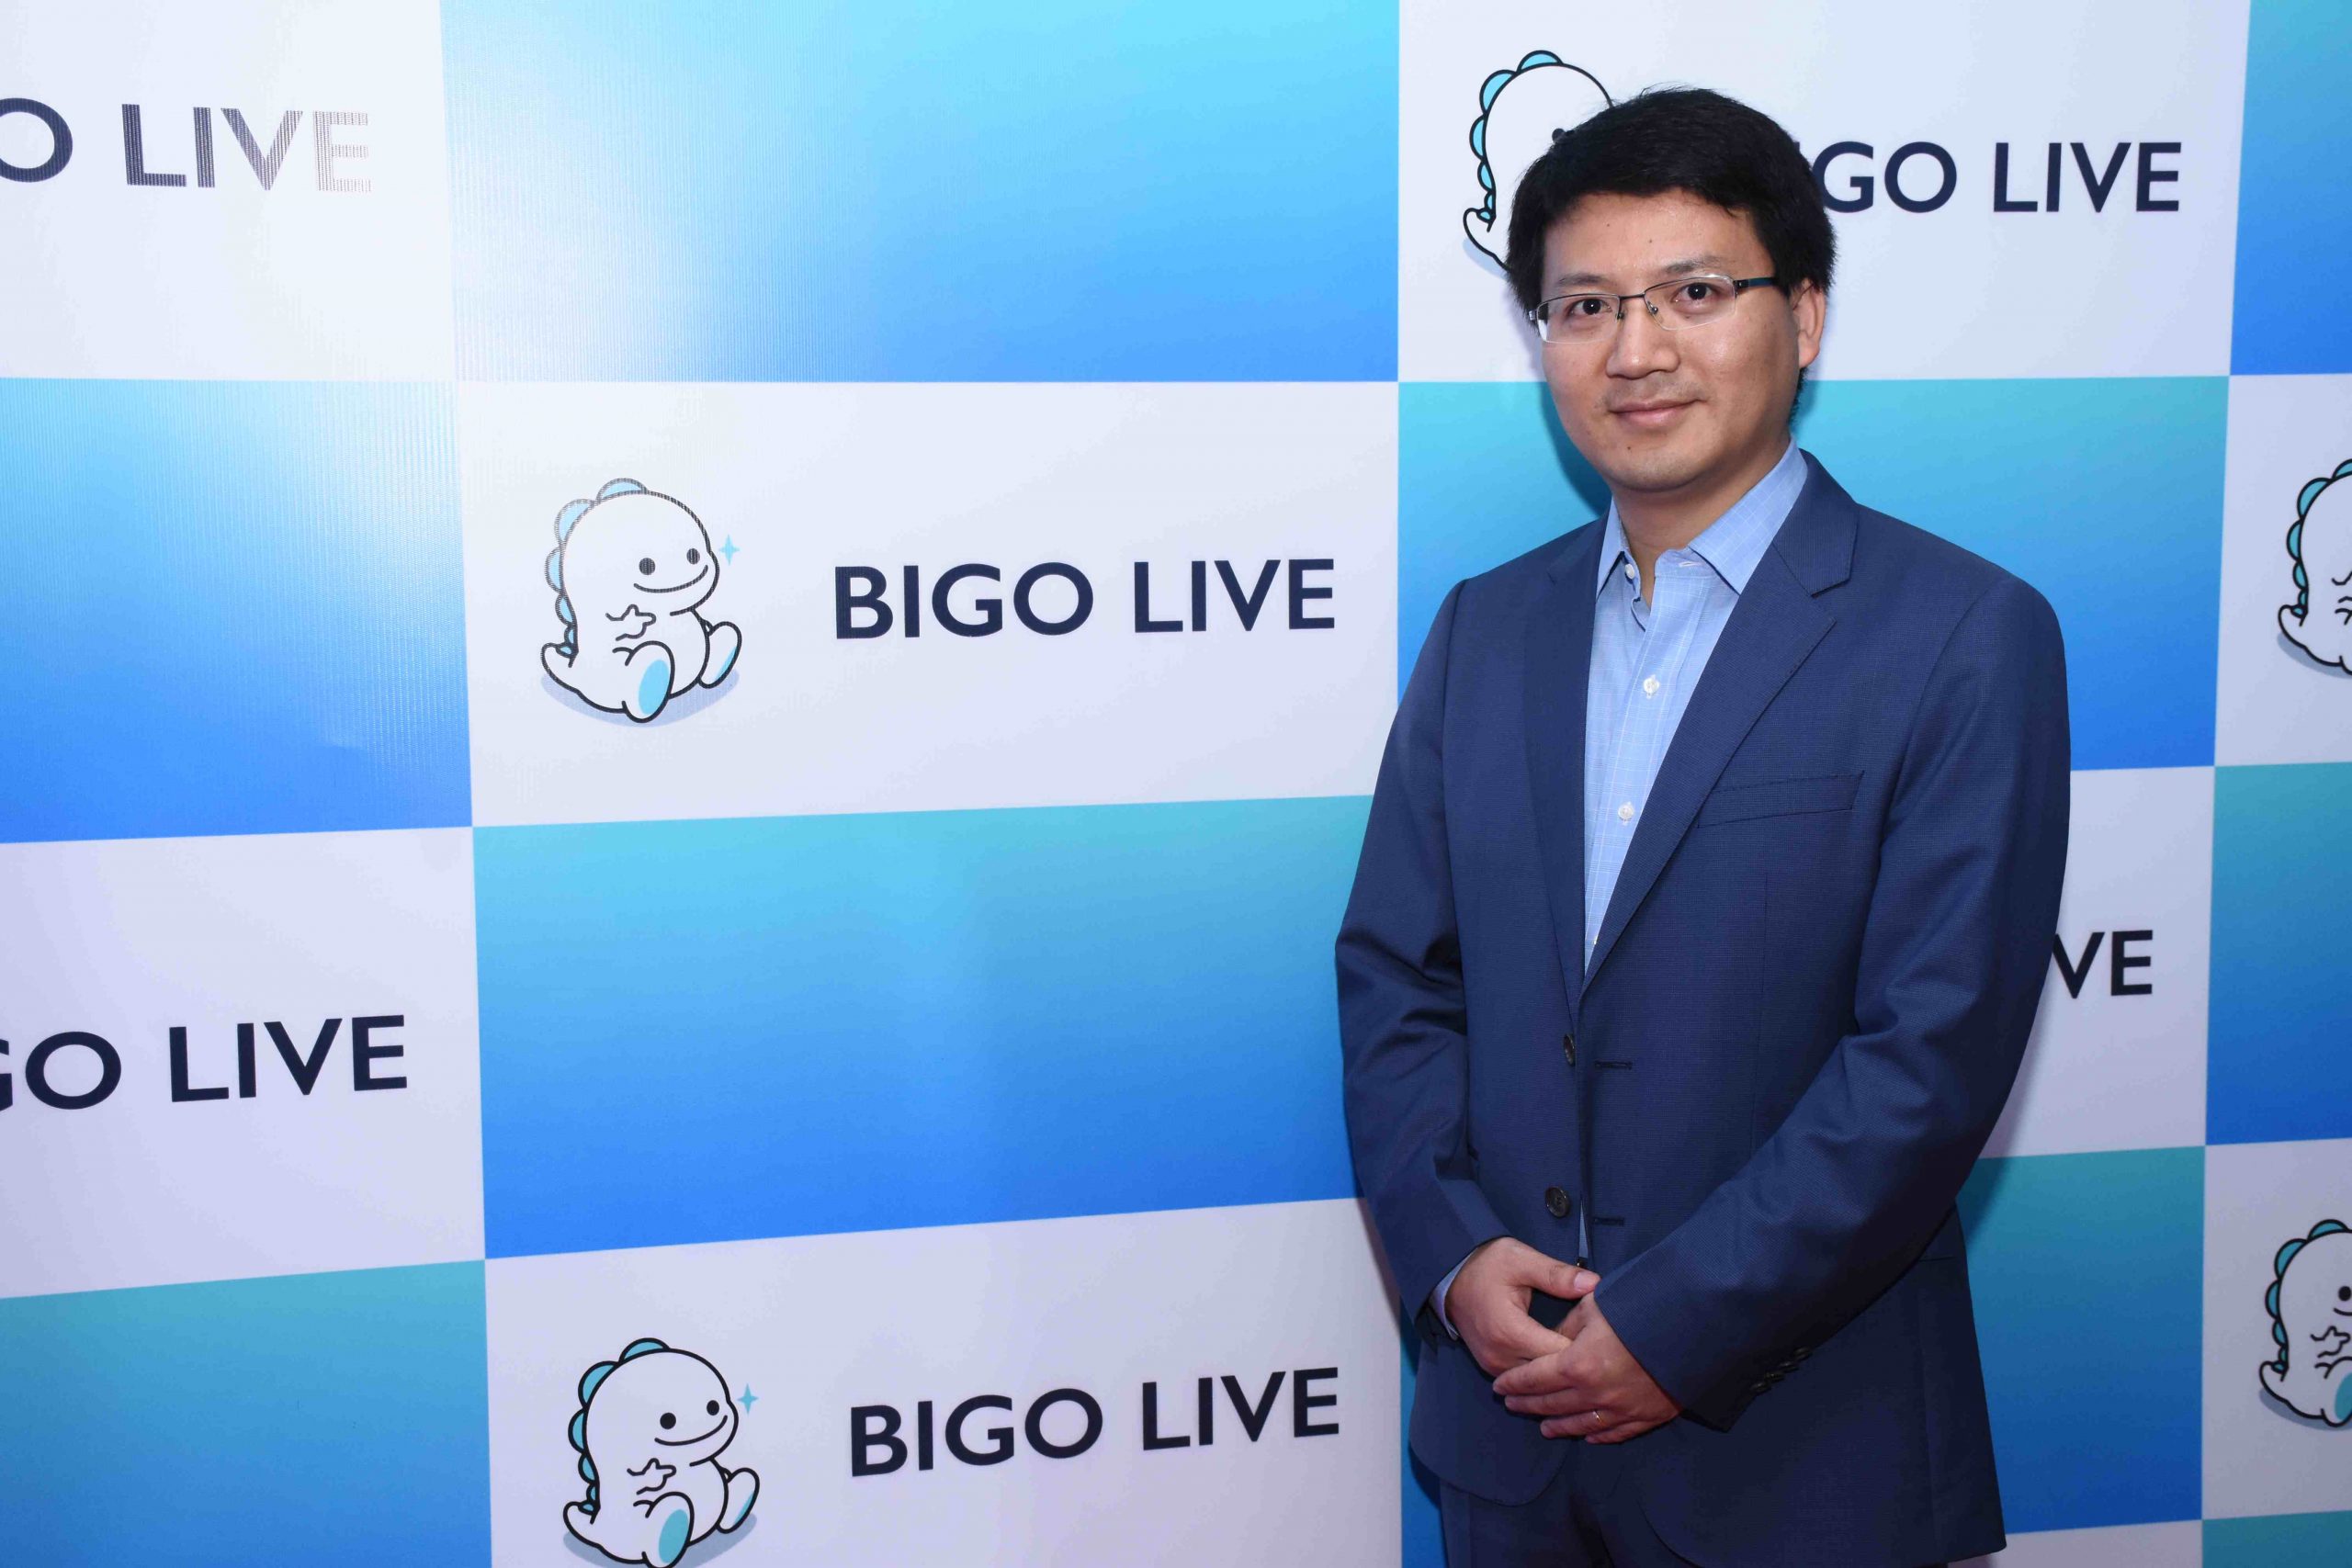 La aplicación Bigo Live ahora quiere centrarse en la expansión de India